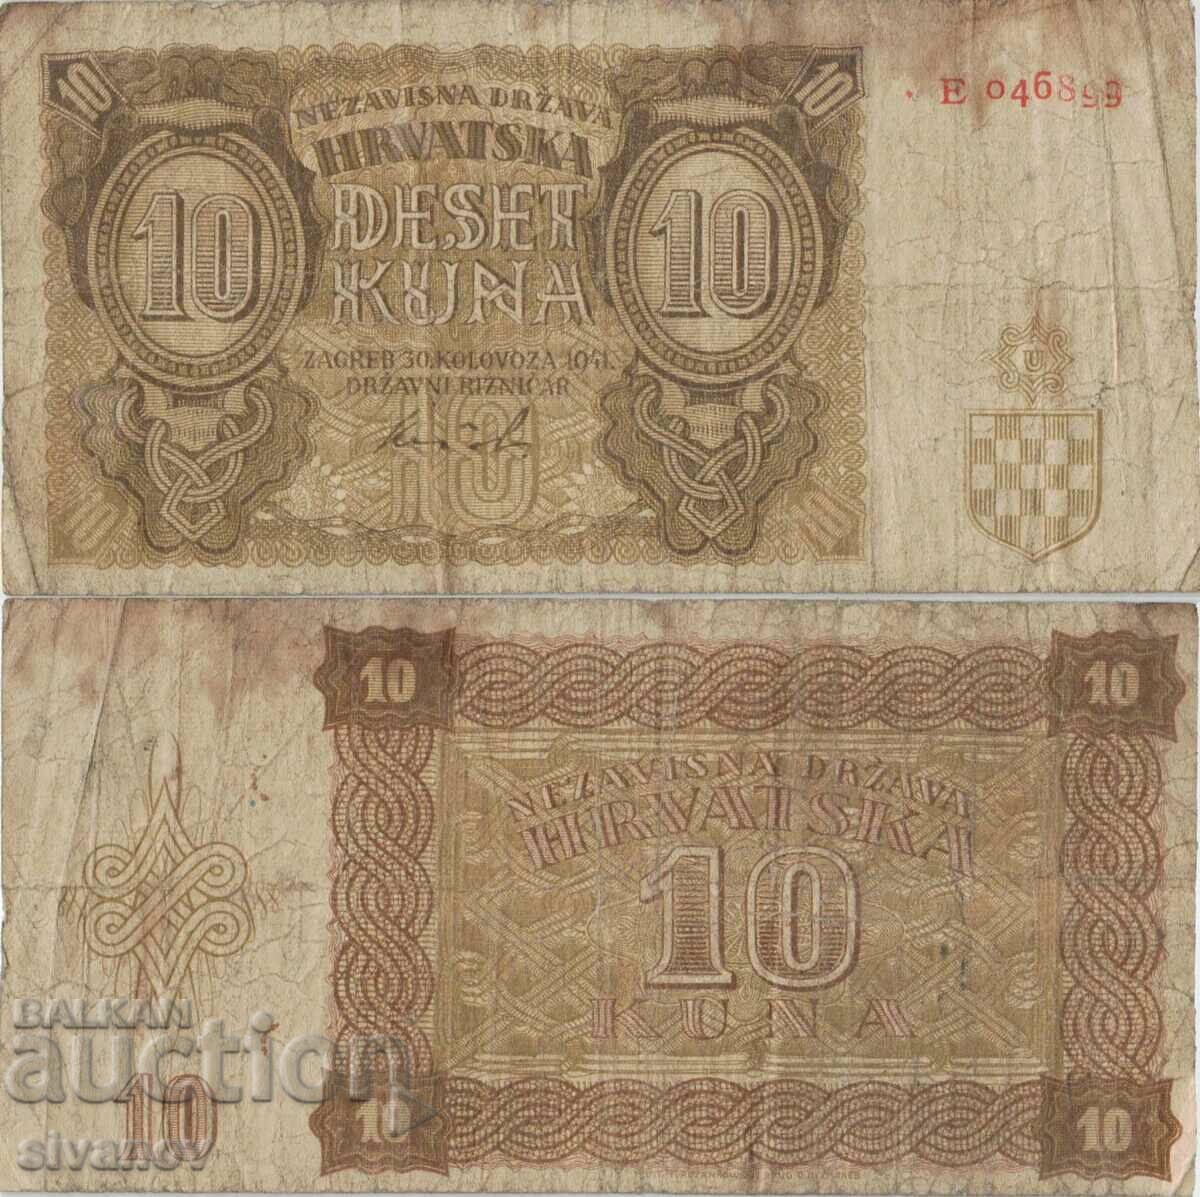 Τραπεζογραμμάτιο Κροατίας 10 kuna 1941 #5323